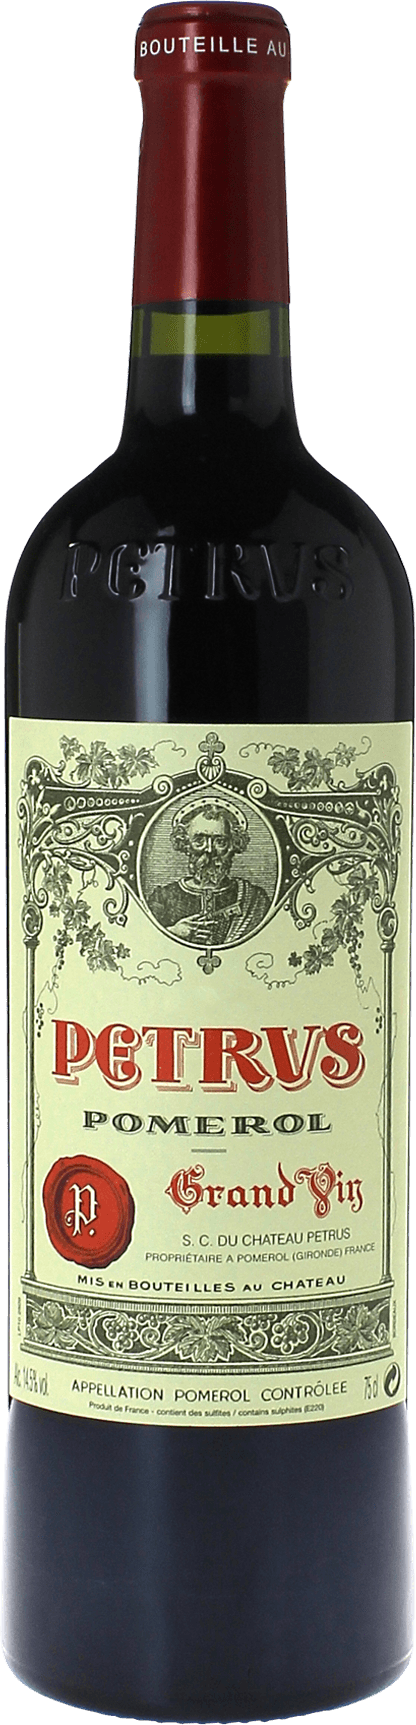 Petrus 2007  Pomerol, Bordeaux rouge